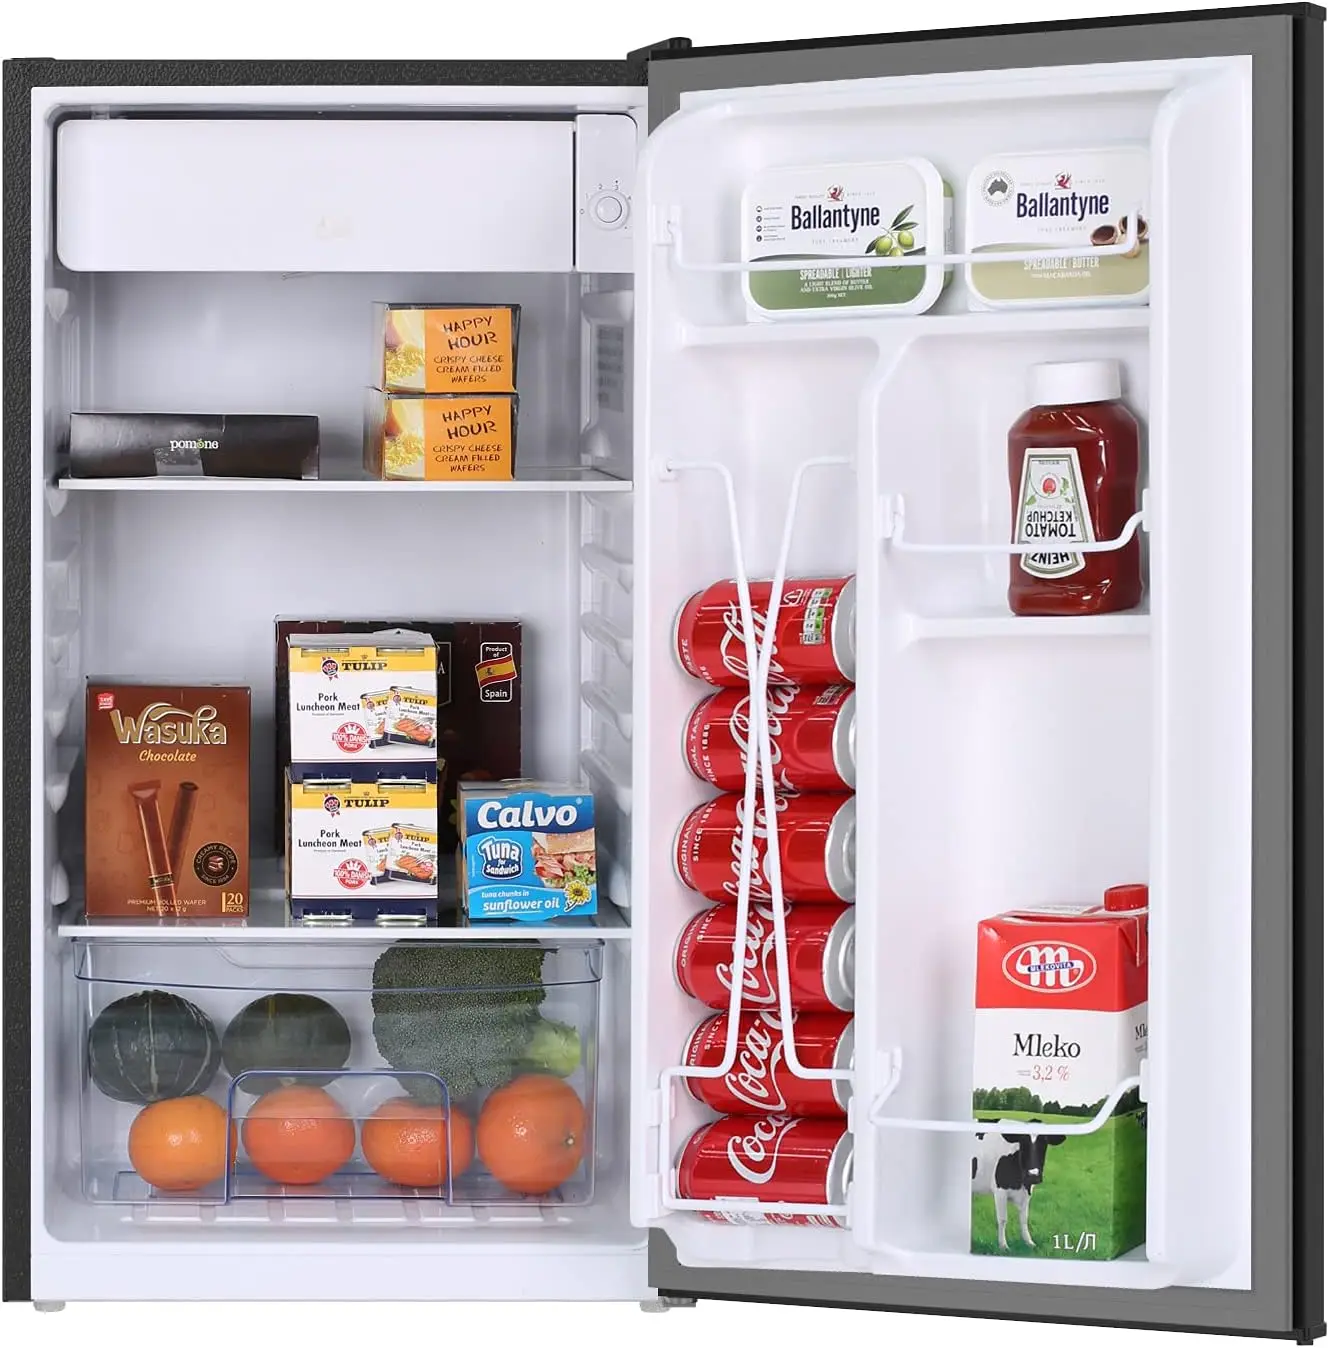 

Куб. Фут. Мини-холодильник для общежития, компактный холодильник, маленький холодильник с морозильной камерой для дома, офиса, спальни, общежития, низкий уровень шума, регулируемая температура